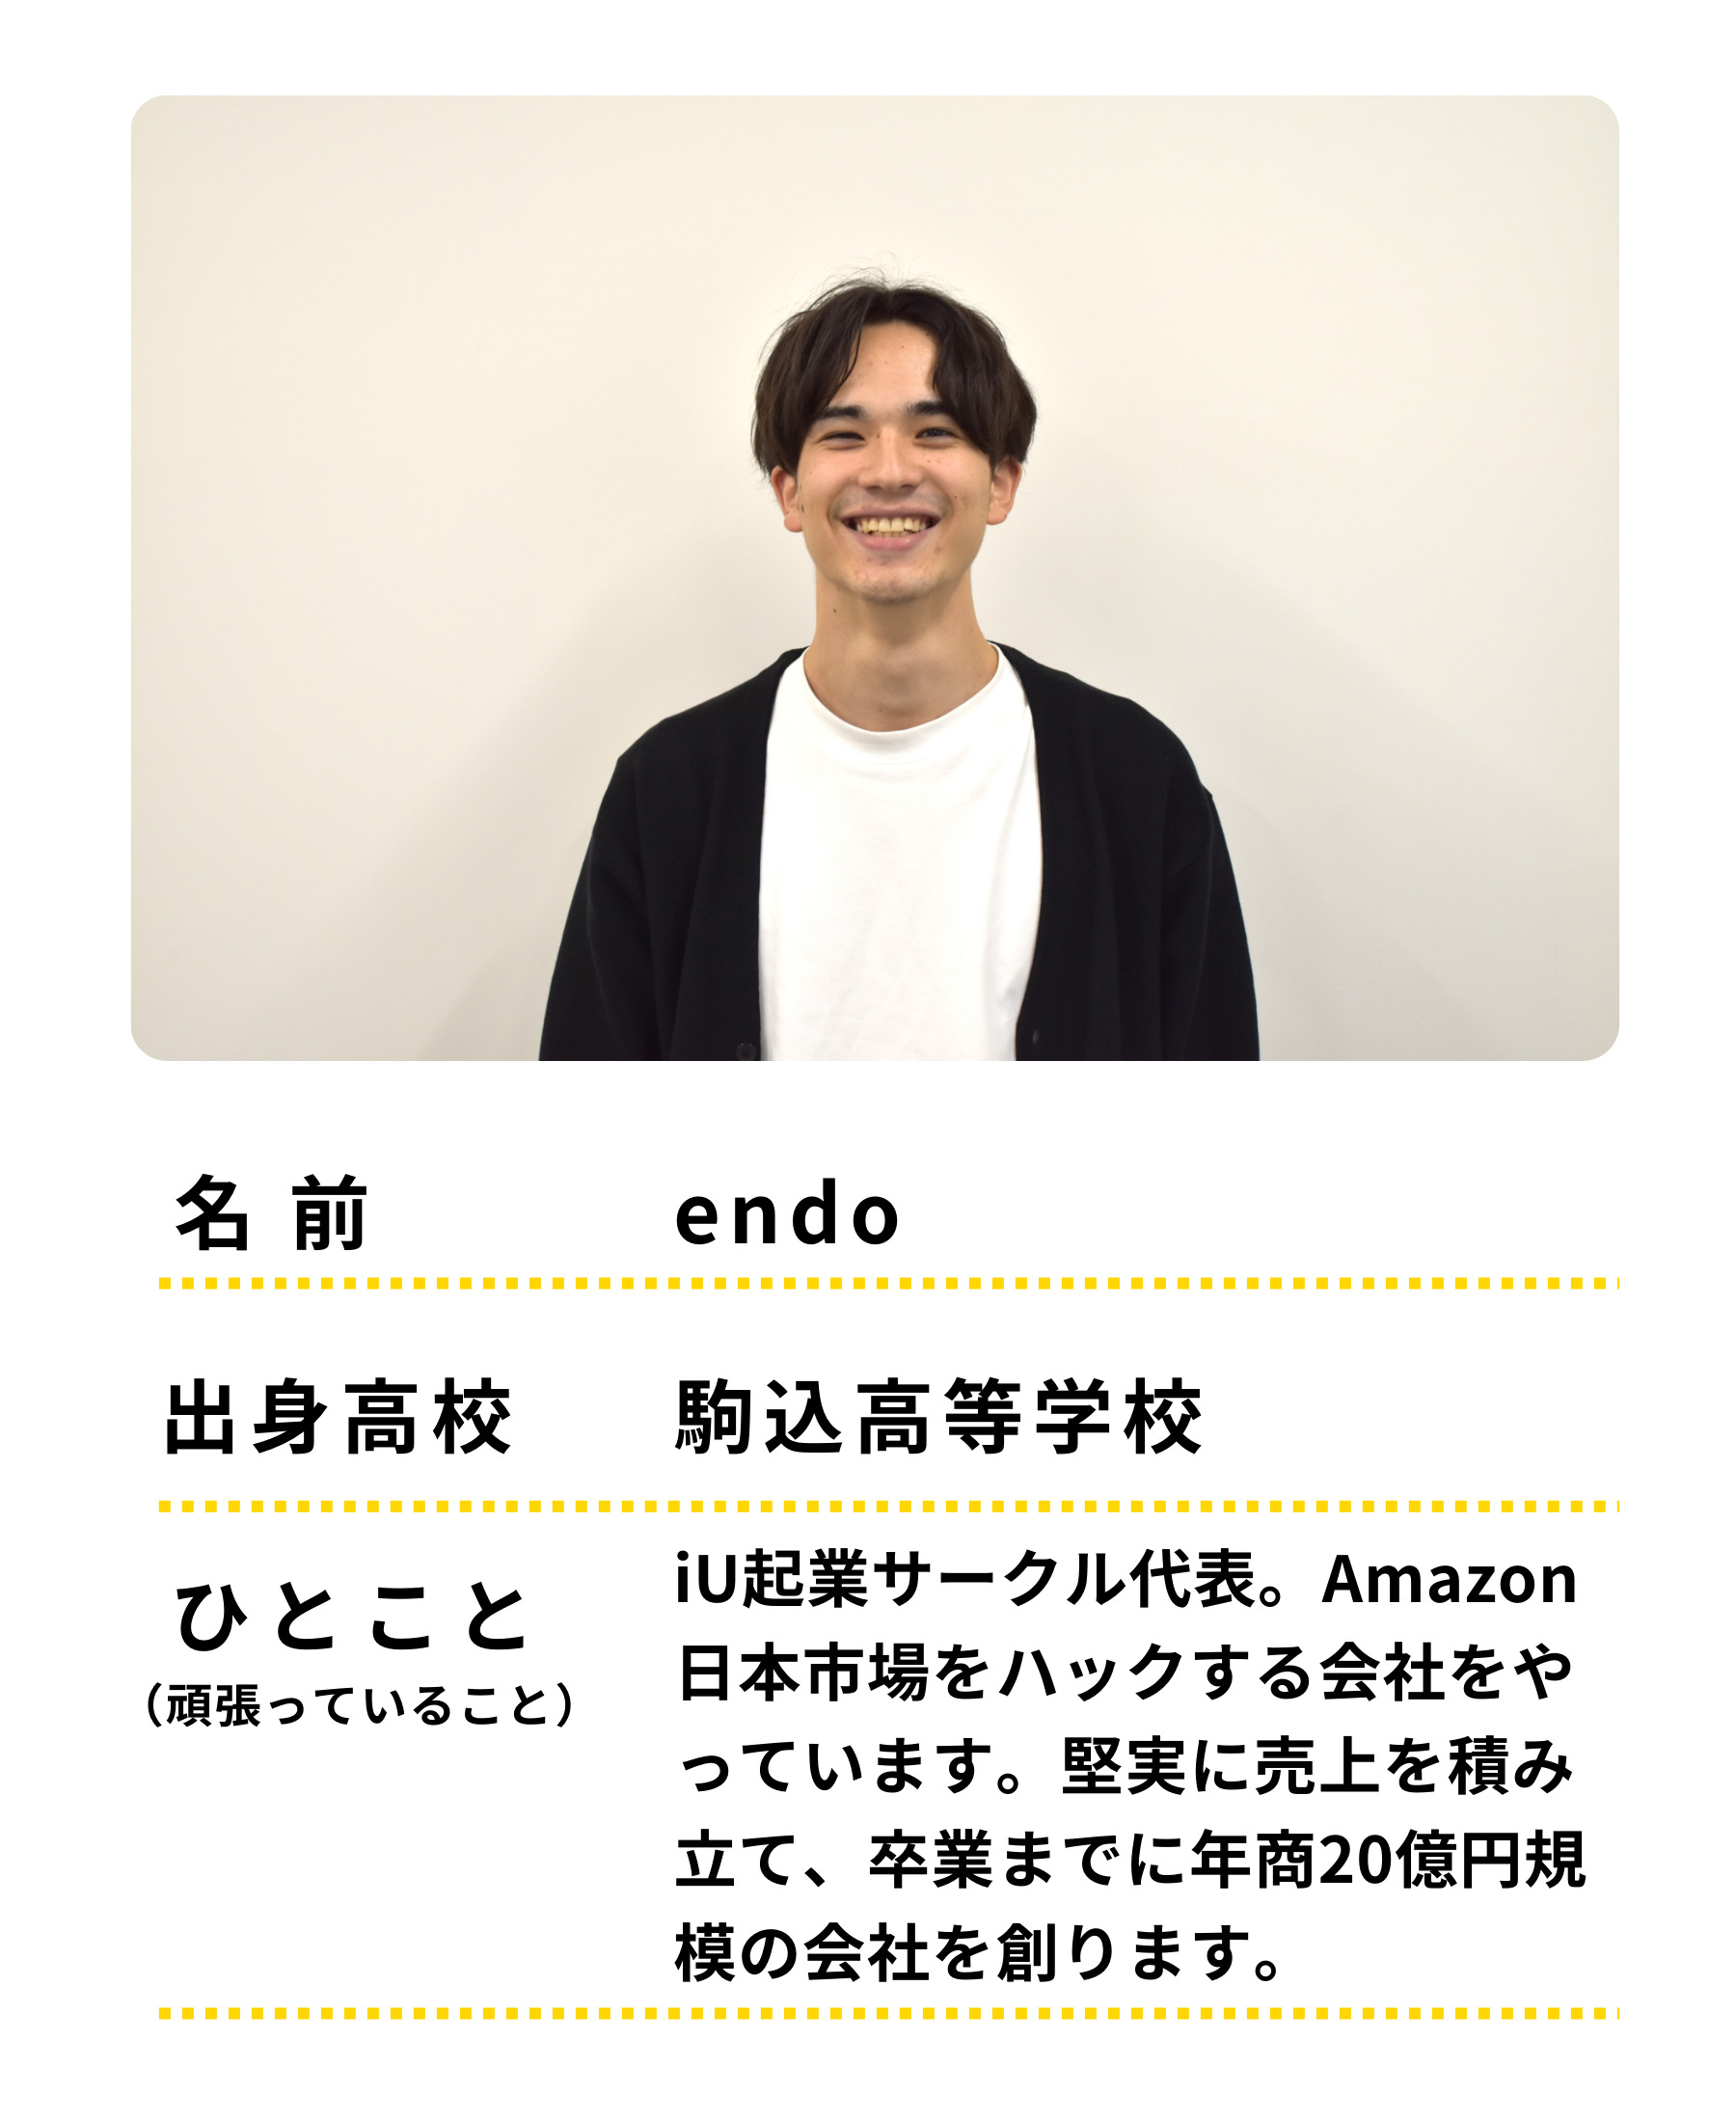 名前：endo　出身高校：駒込高等学校　ひとこと：iU起業サークル代表。Amazon日本市場をハックする会社をやっています。堅実に売上を積み立て、卒業までに年商20億規模の会社を創ります。